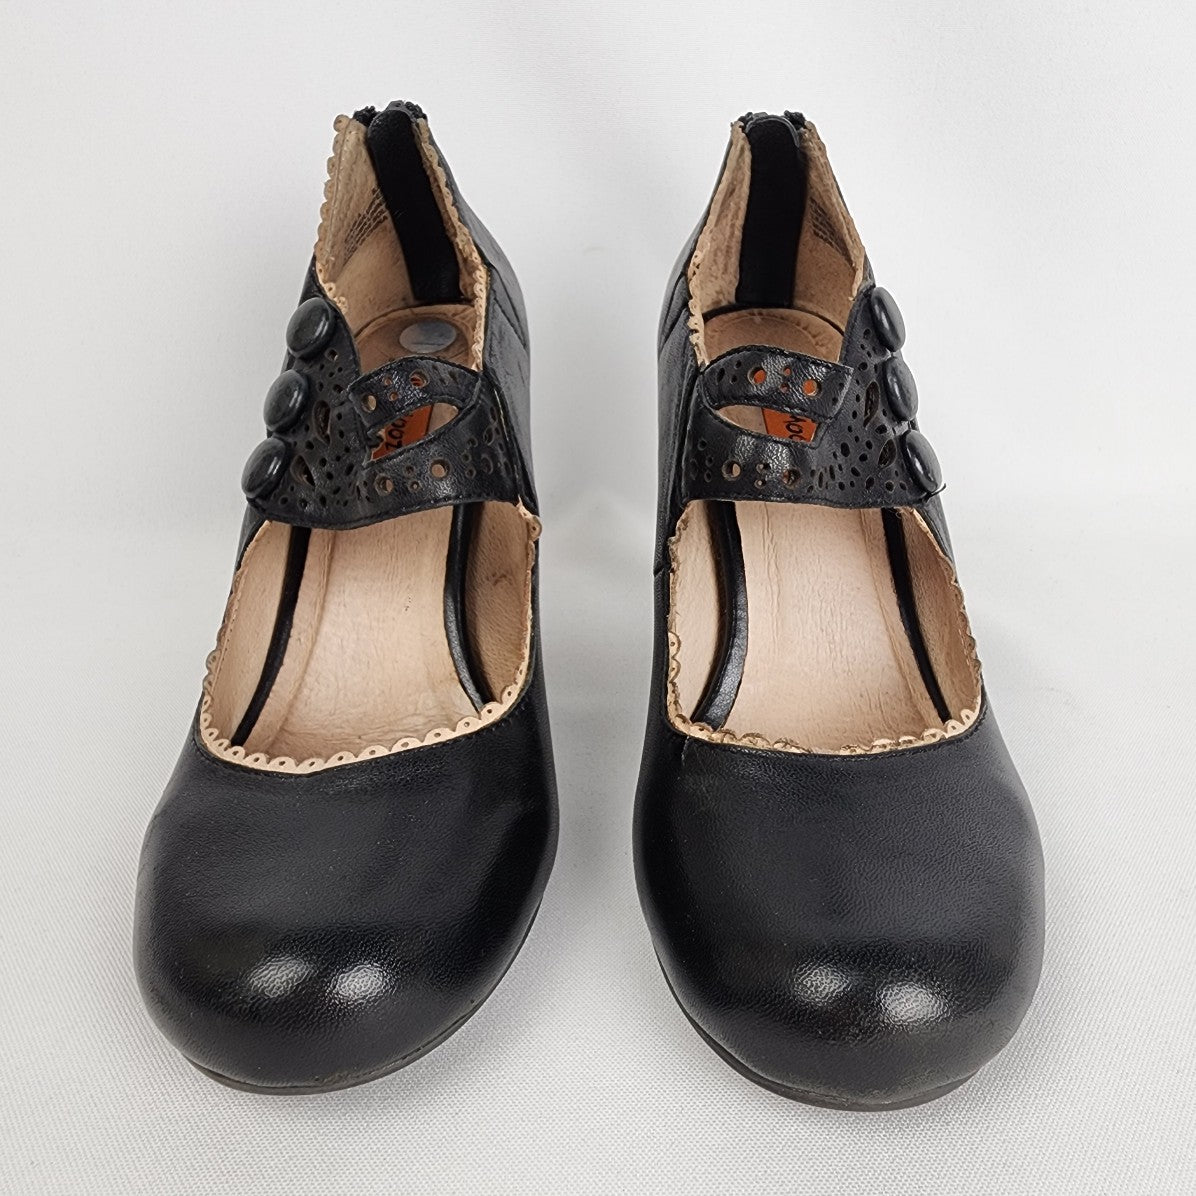 Miz Mooz Black Leather Mary Jane Heeled Shoes Size 5.5